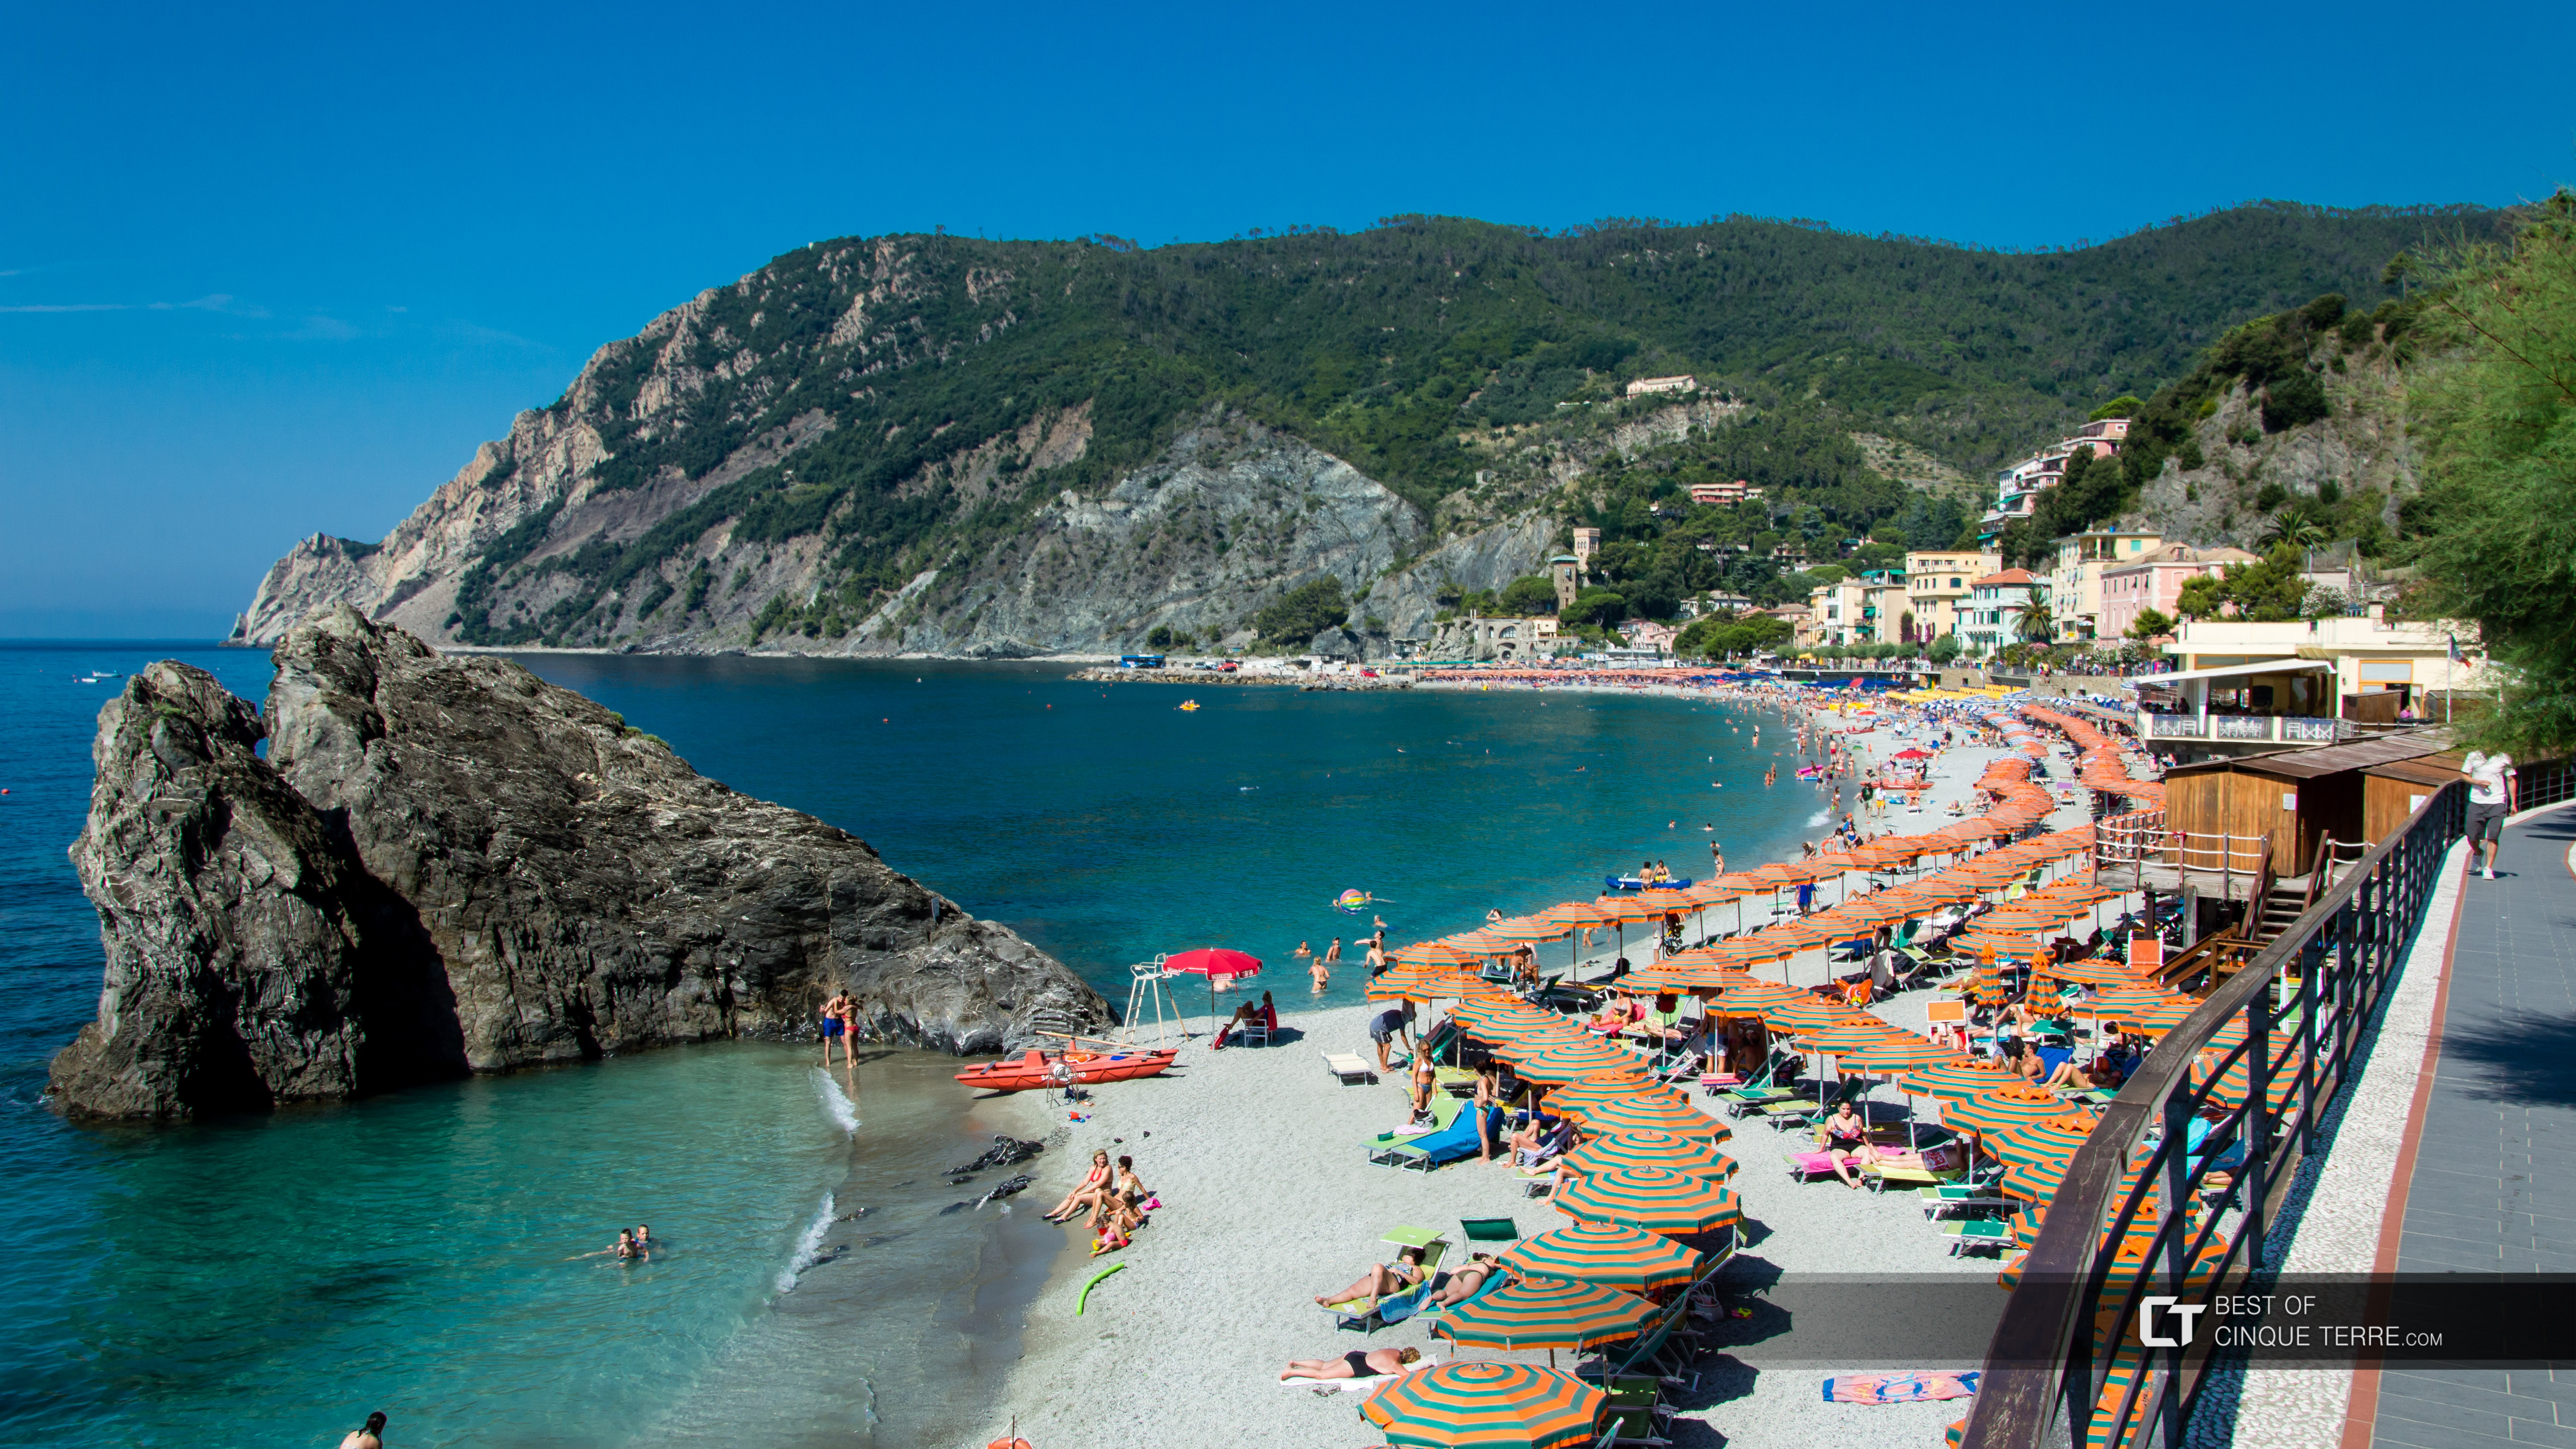 La spiaggia più grande delle Cinque Terre: Fegina, Monterosso al Mare, Italia